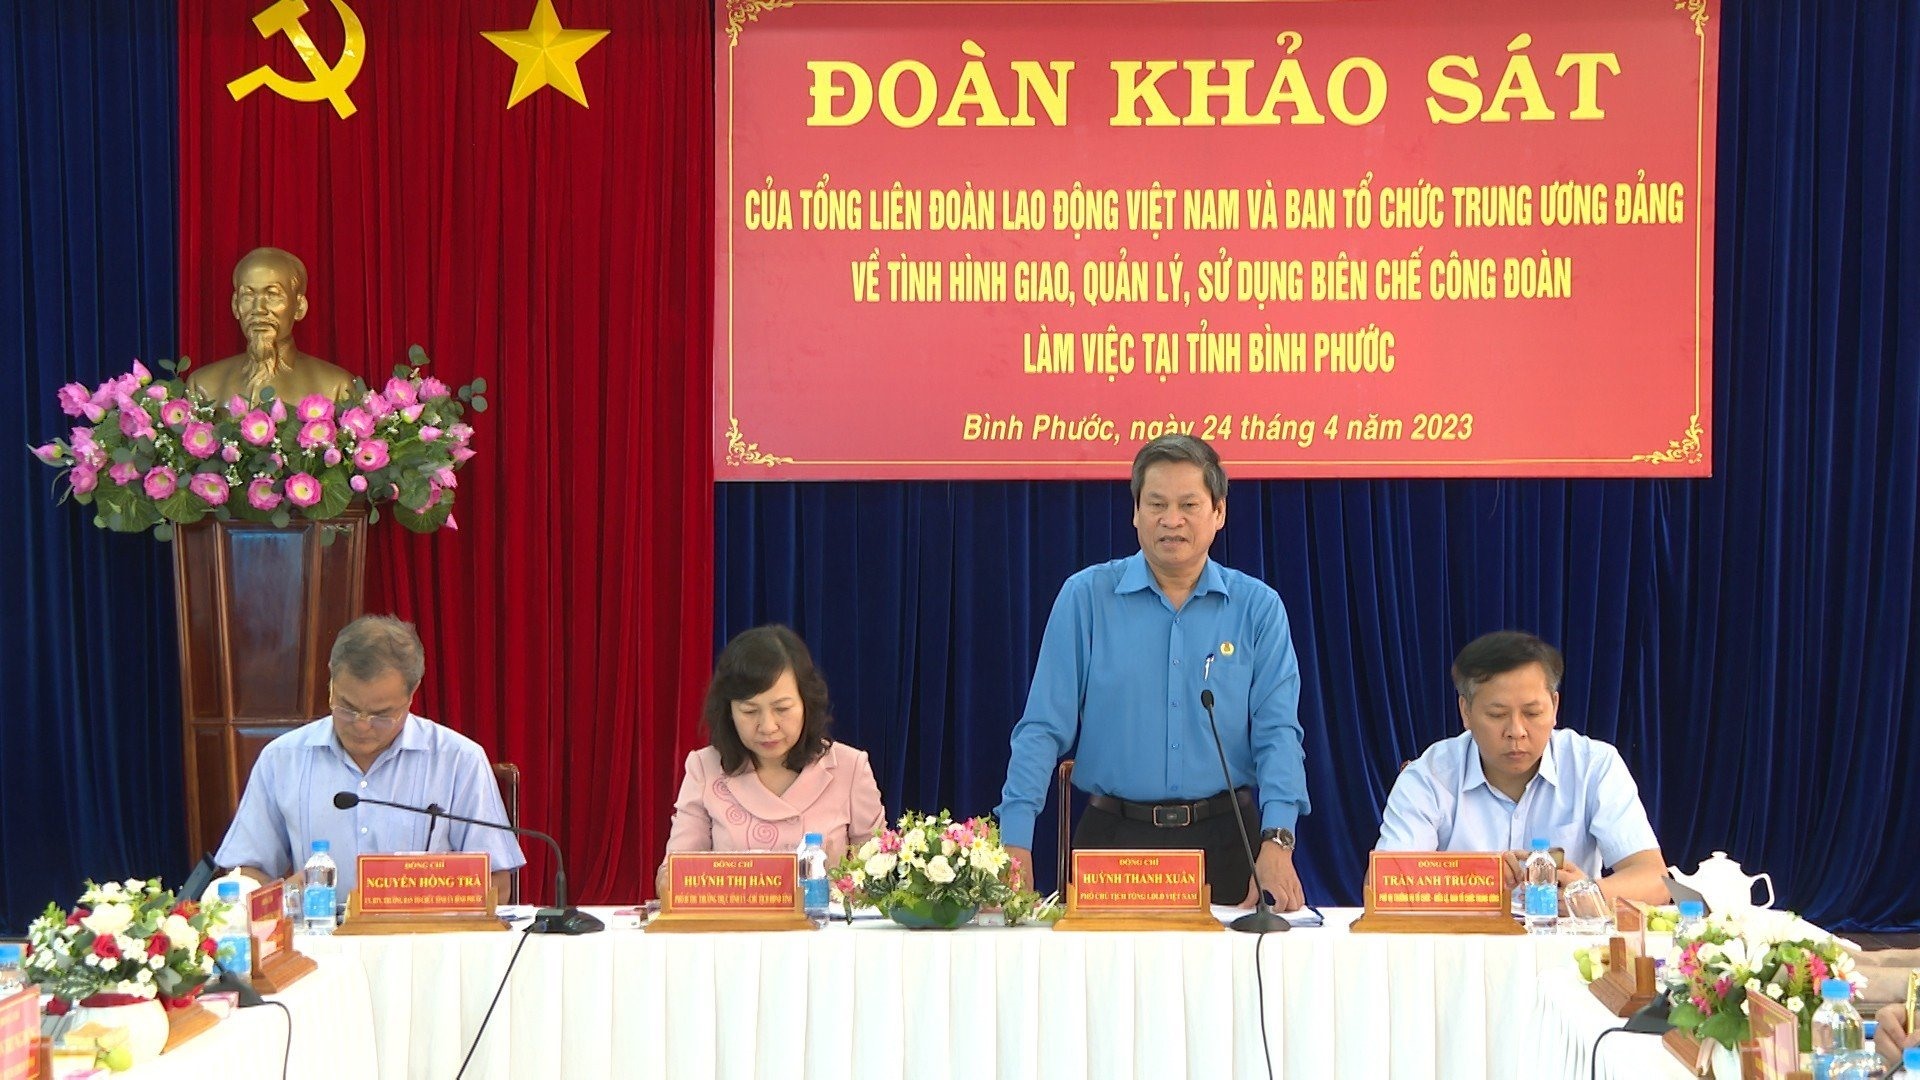 Đoàn khảo sát của Tổng LĐLĐ Việt Nam và Ban Tổ chức Trung ương Đảng do Phó Chủ tịch Tổng LĐLĐ Việt Nam Huỳnh Thanh Xuân làm trưởng đoàn đã có buổi làm việc tại tỉnh Bình Phước